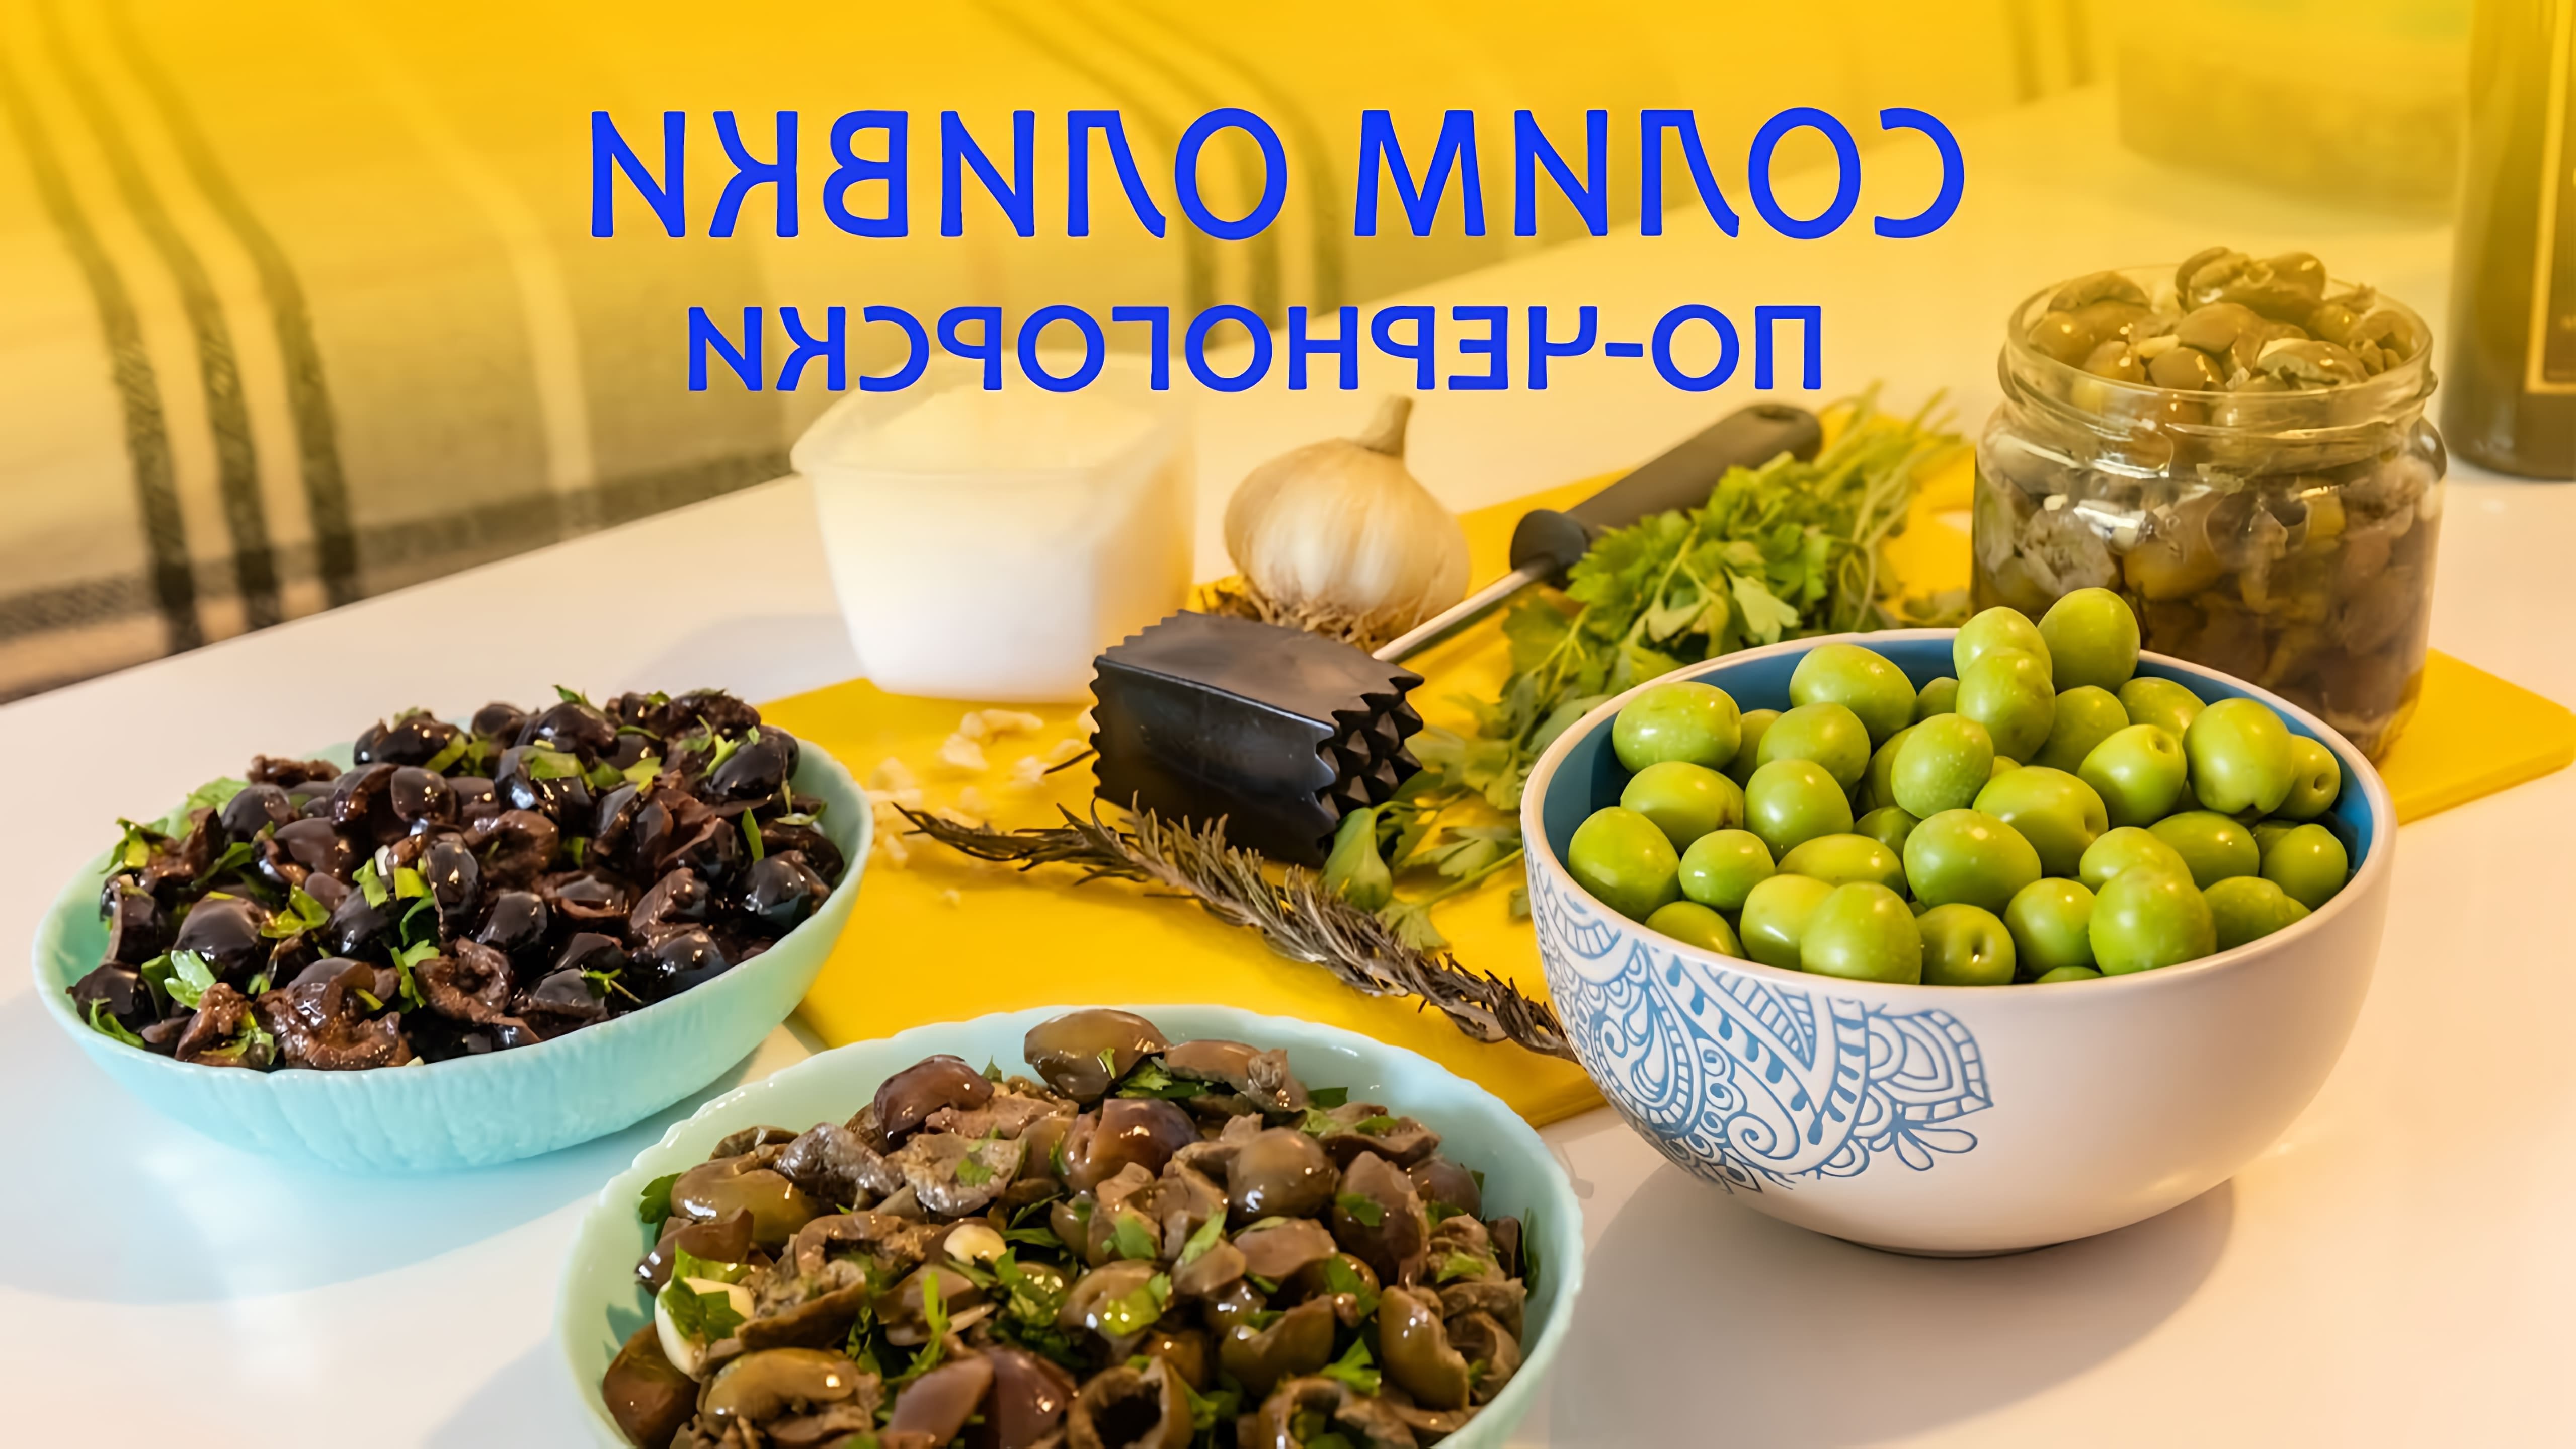 В этом видео рассказывается о том, как солить оливки в домашних условиях